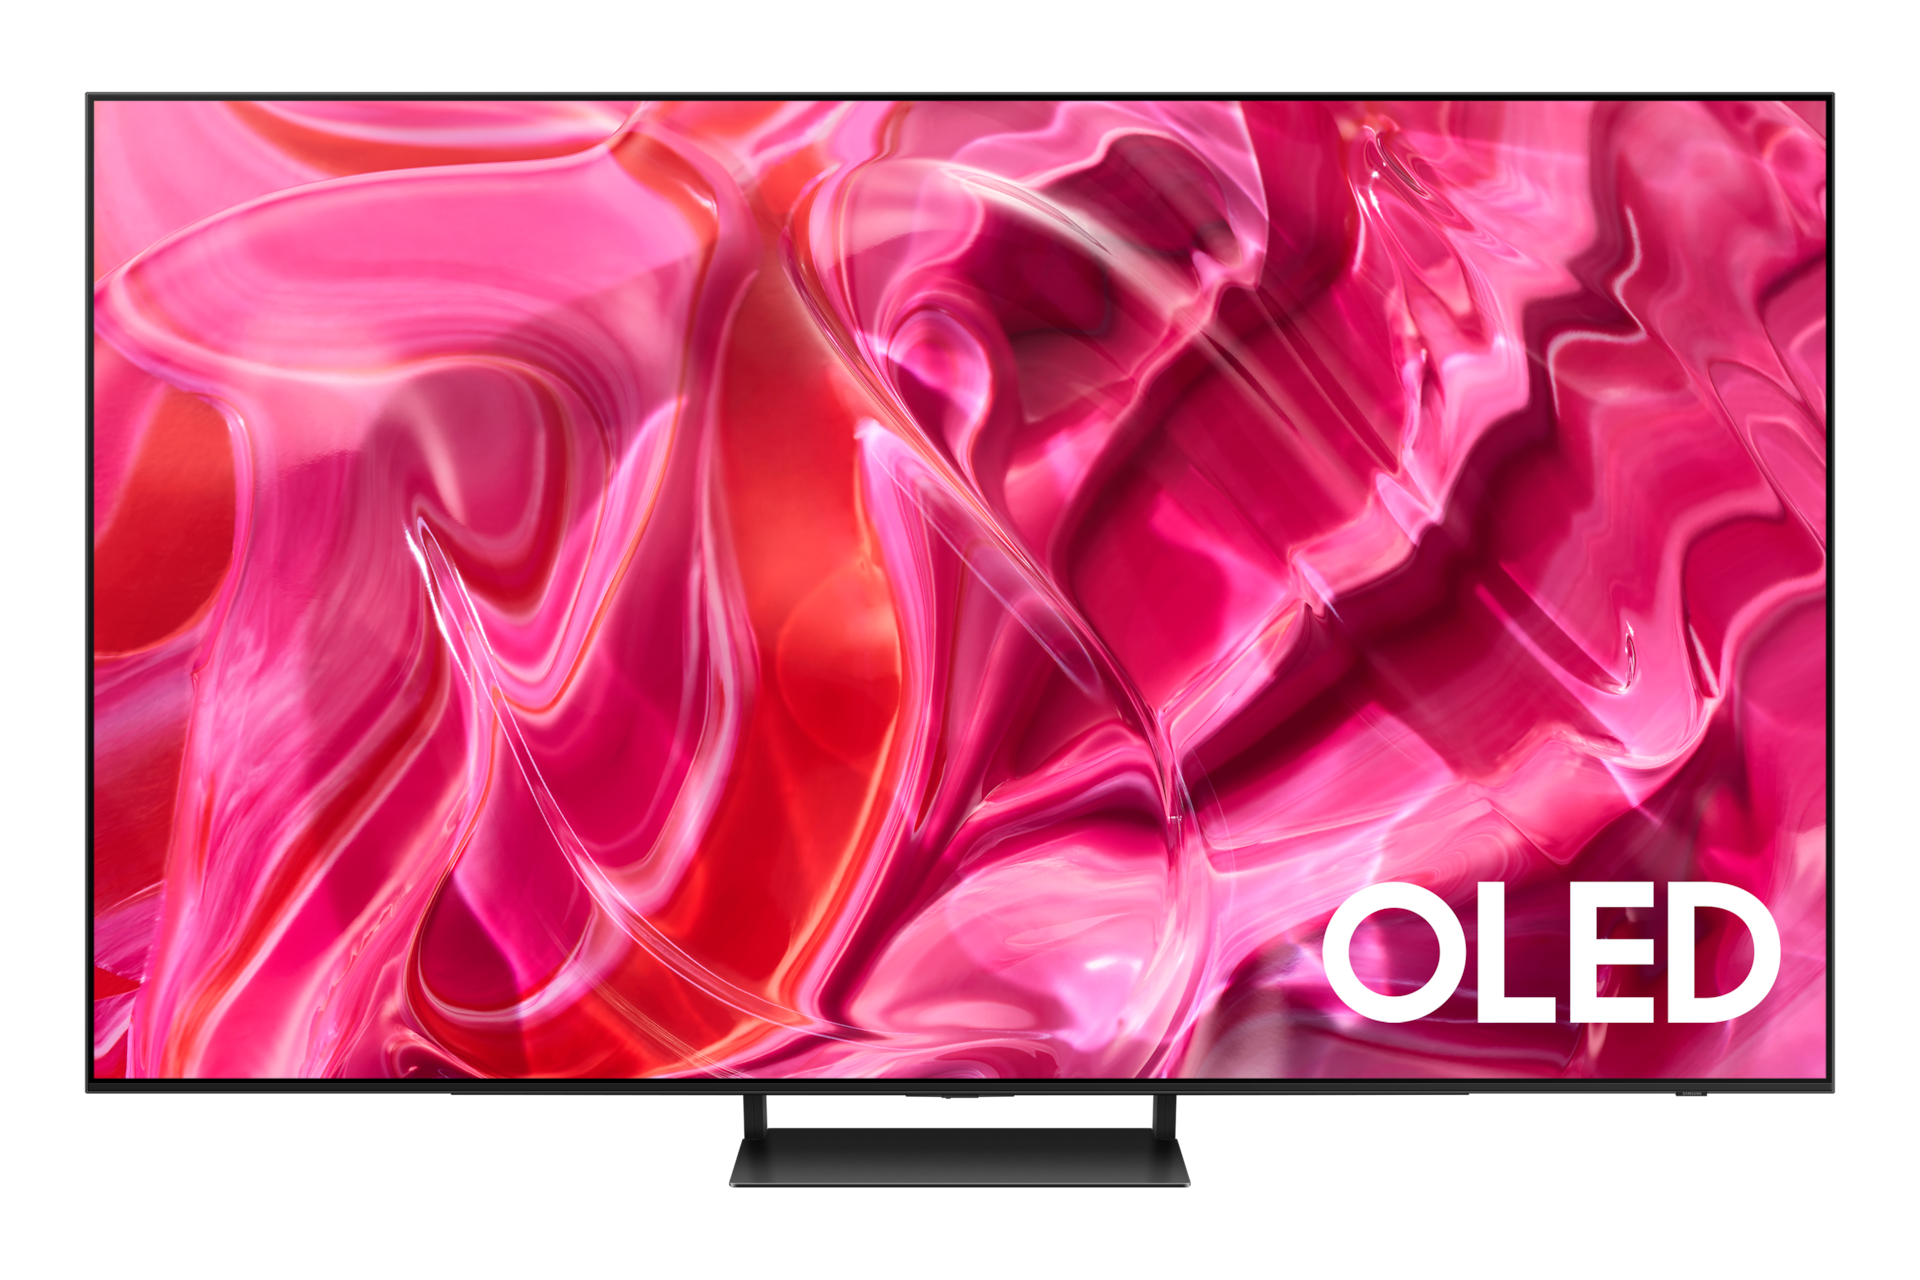 Pantalla 4K QLED, 55 pulgadas y HDMI 2.1: así es esta impresionante smart  TV de Samsung que ahora sale a mejor precio en